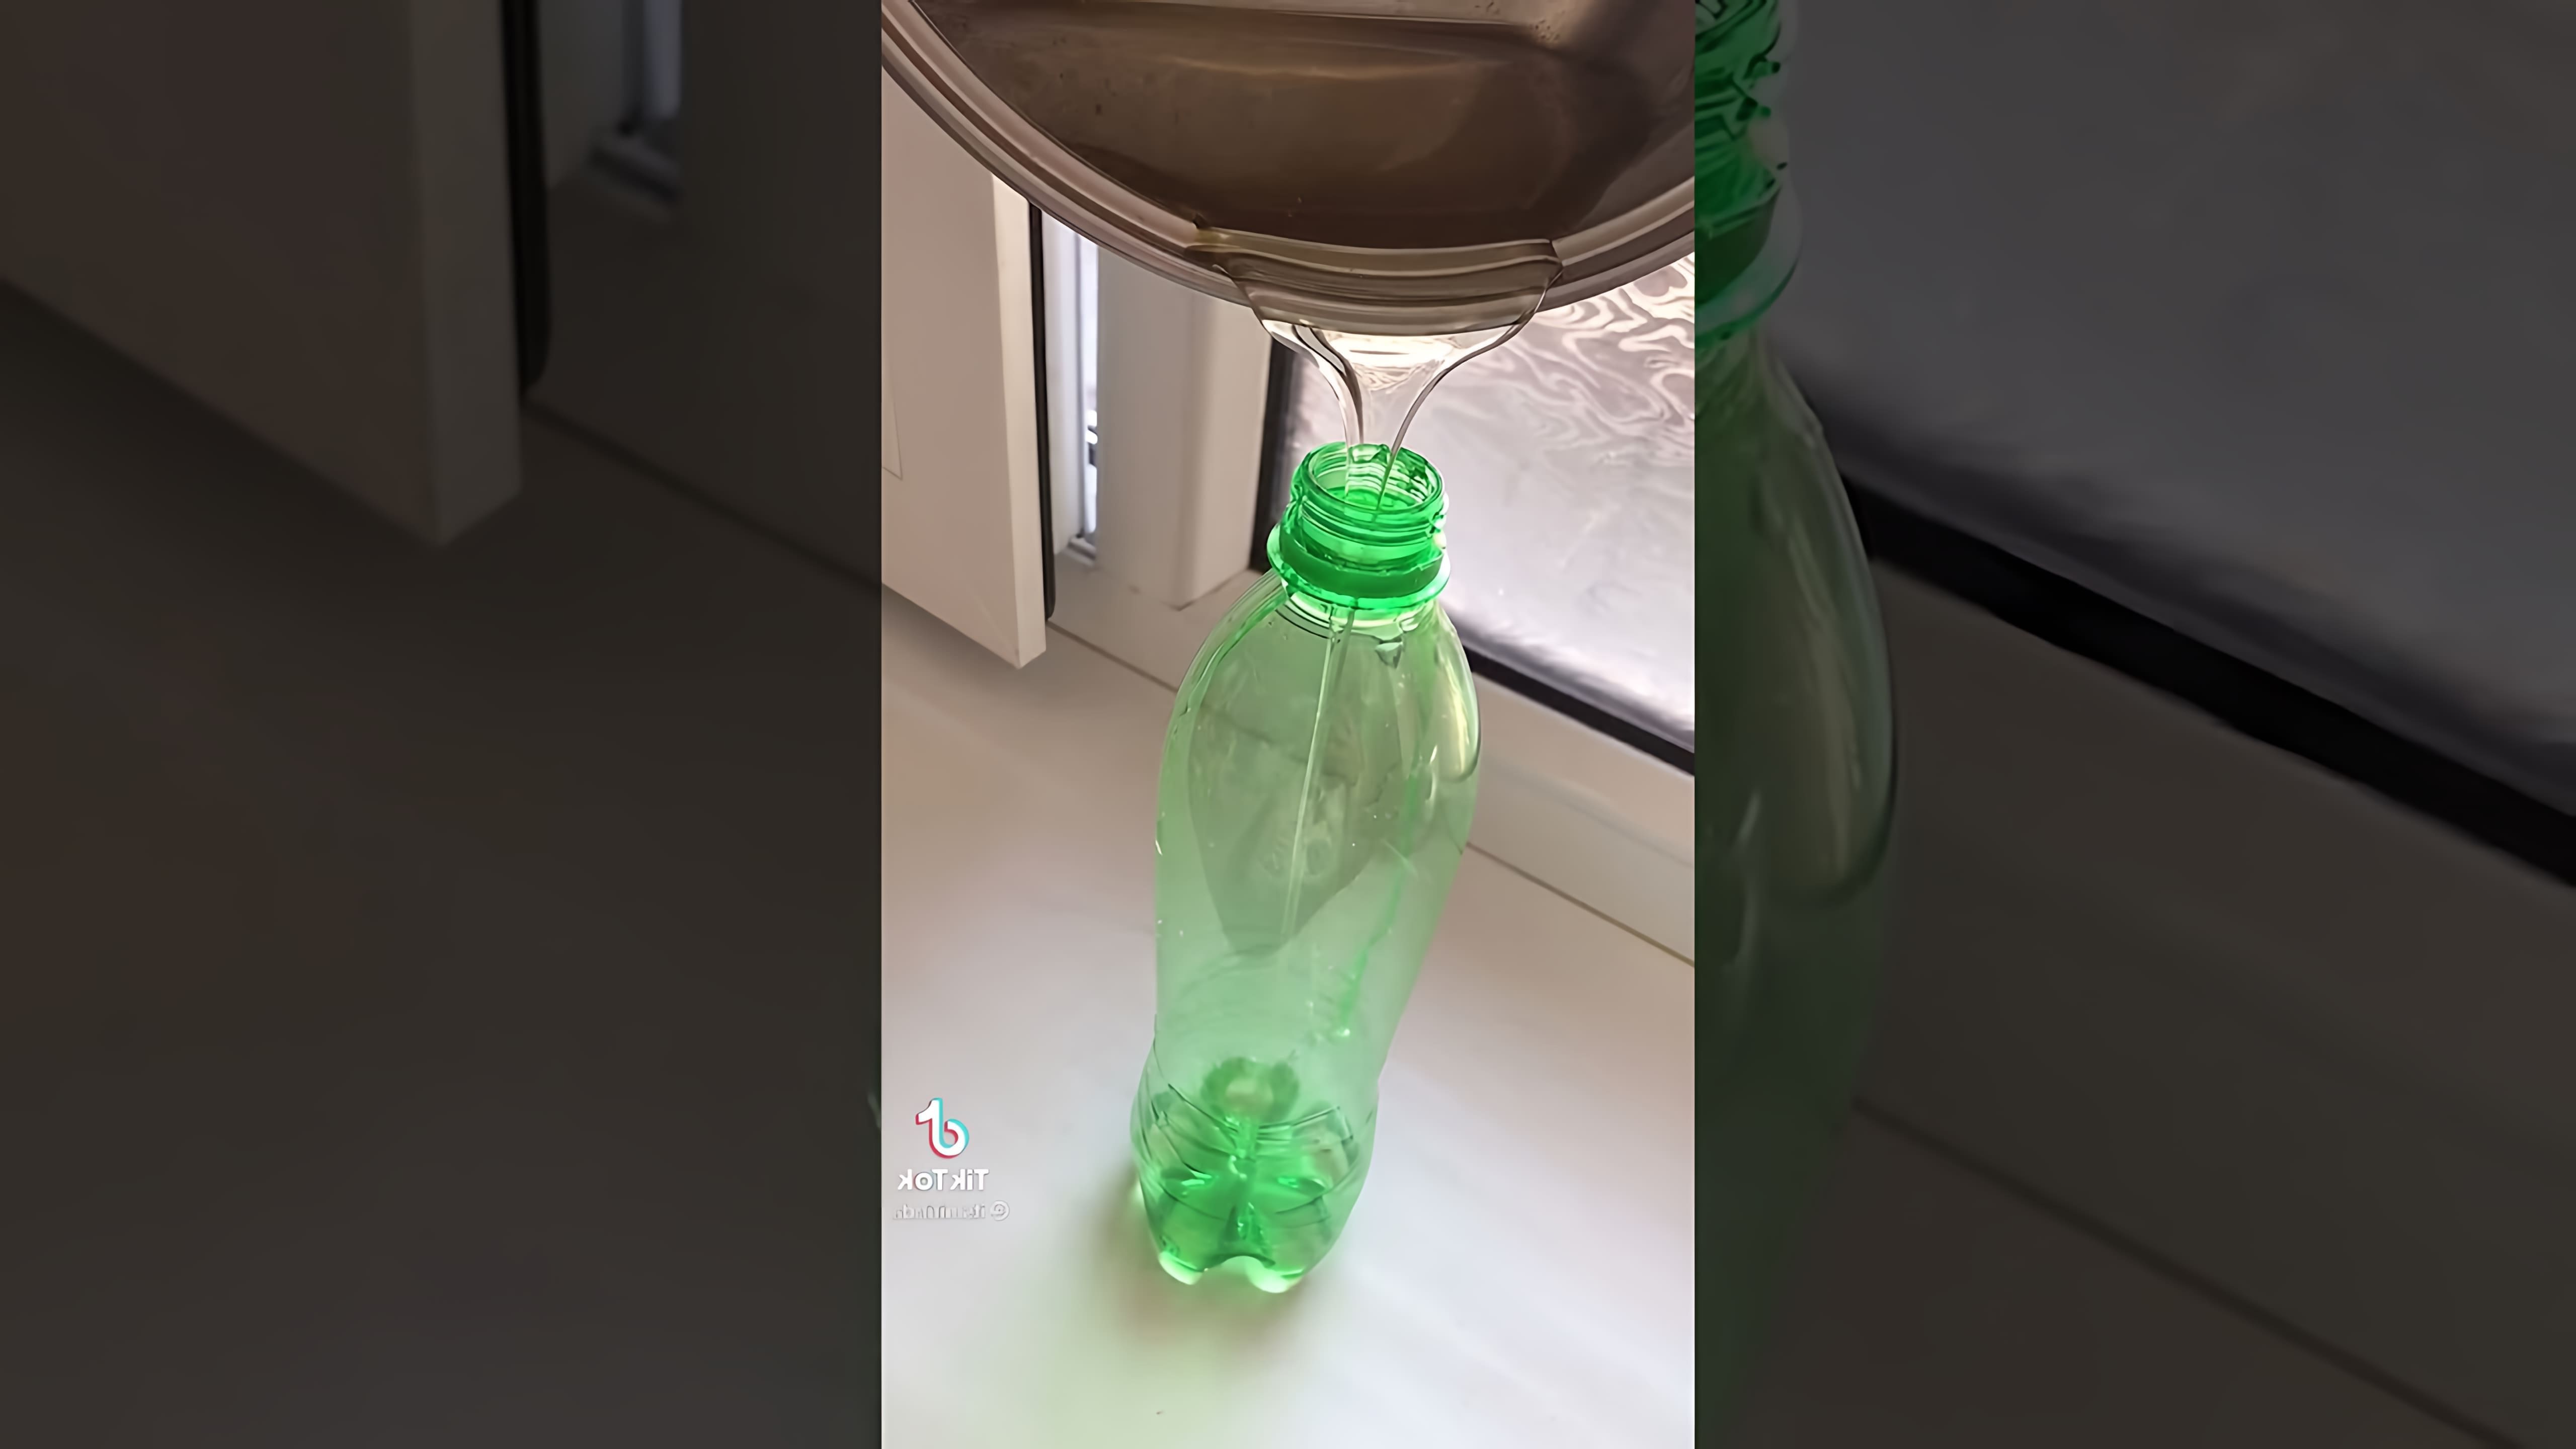 В этом видео демонстрируется процесс создания съедобной желешки в бутылке